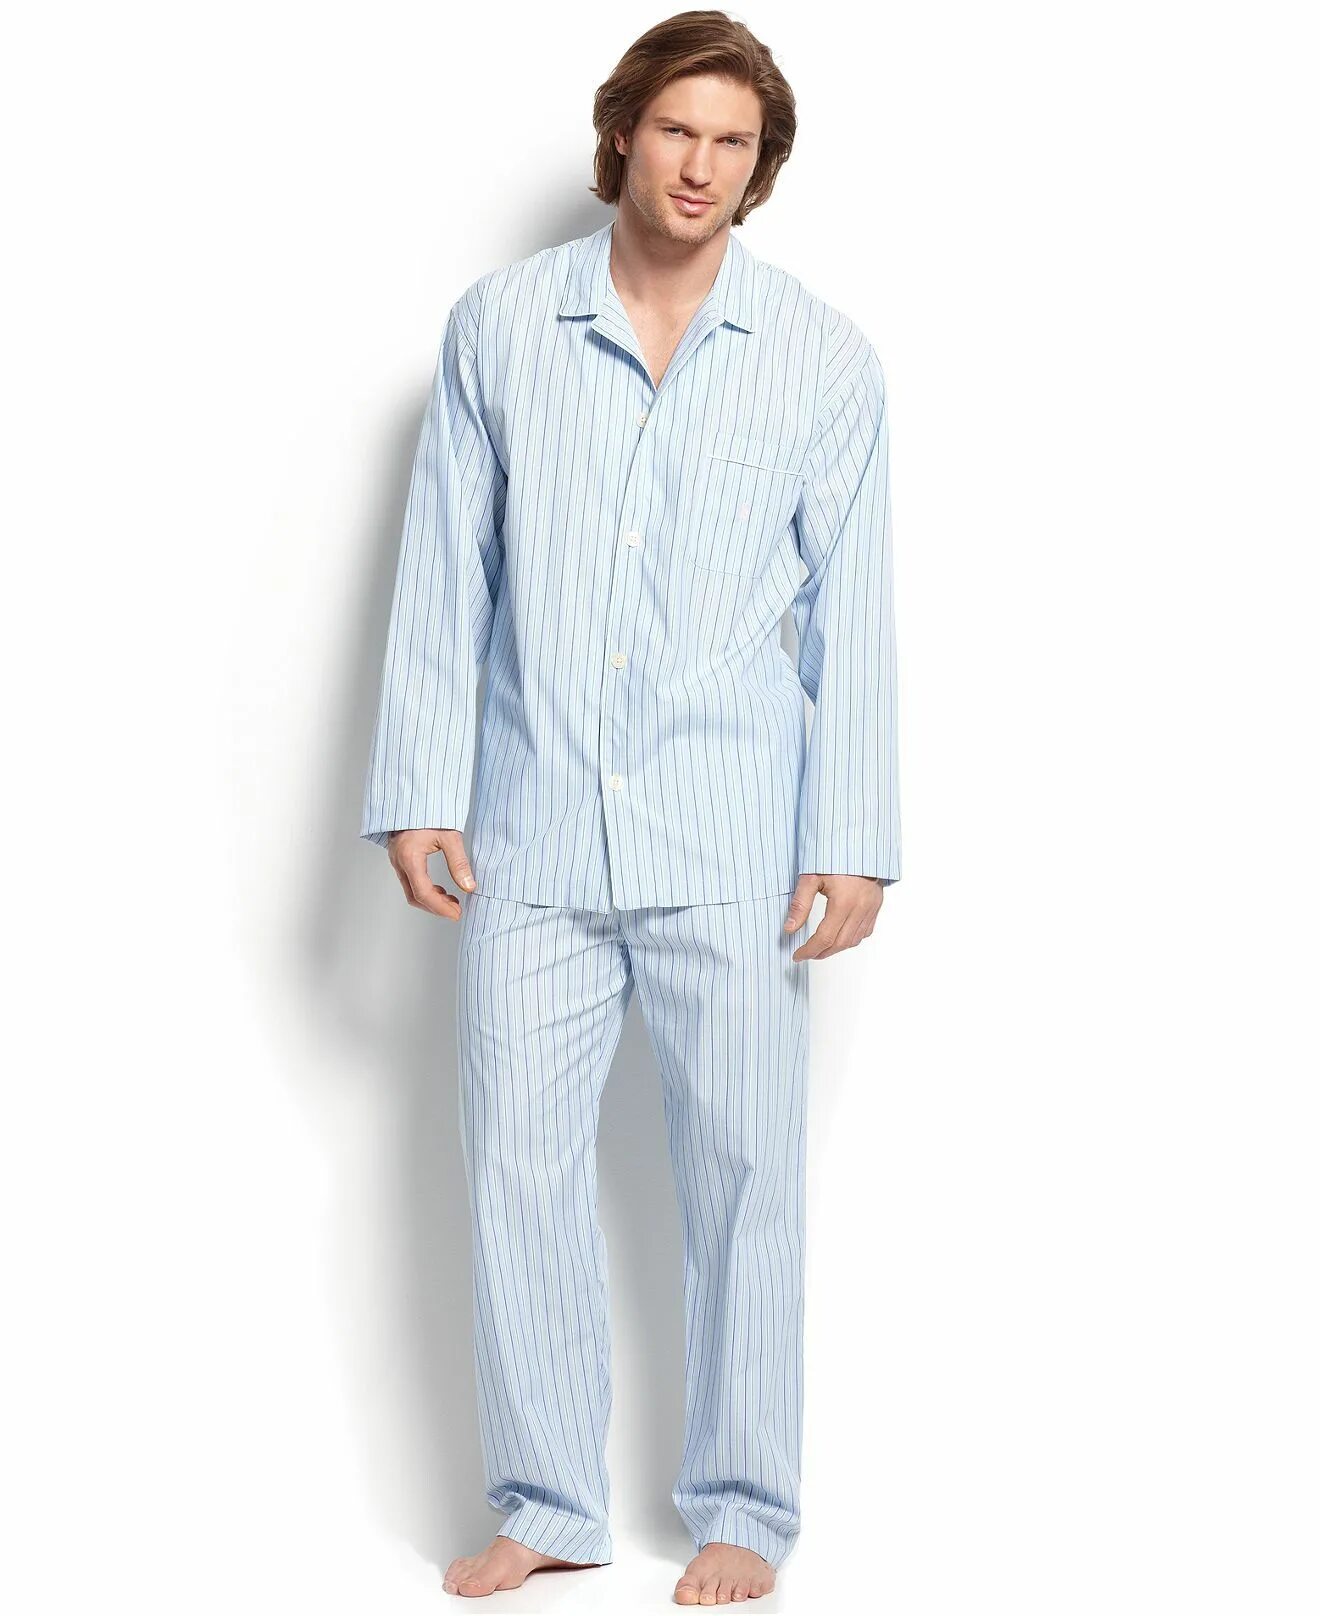 Пижама Ральф Лорен мужская. Polo-Ralph-Lauren-Mens-Nightwear-Sleepwear-Pajama-Top-1?variant=42822820921514. Больничная пижама для мужчин. Мужчина в пижаме. Магазины мужских пижам